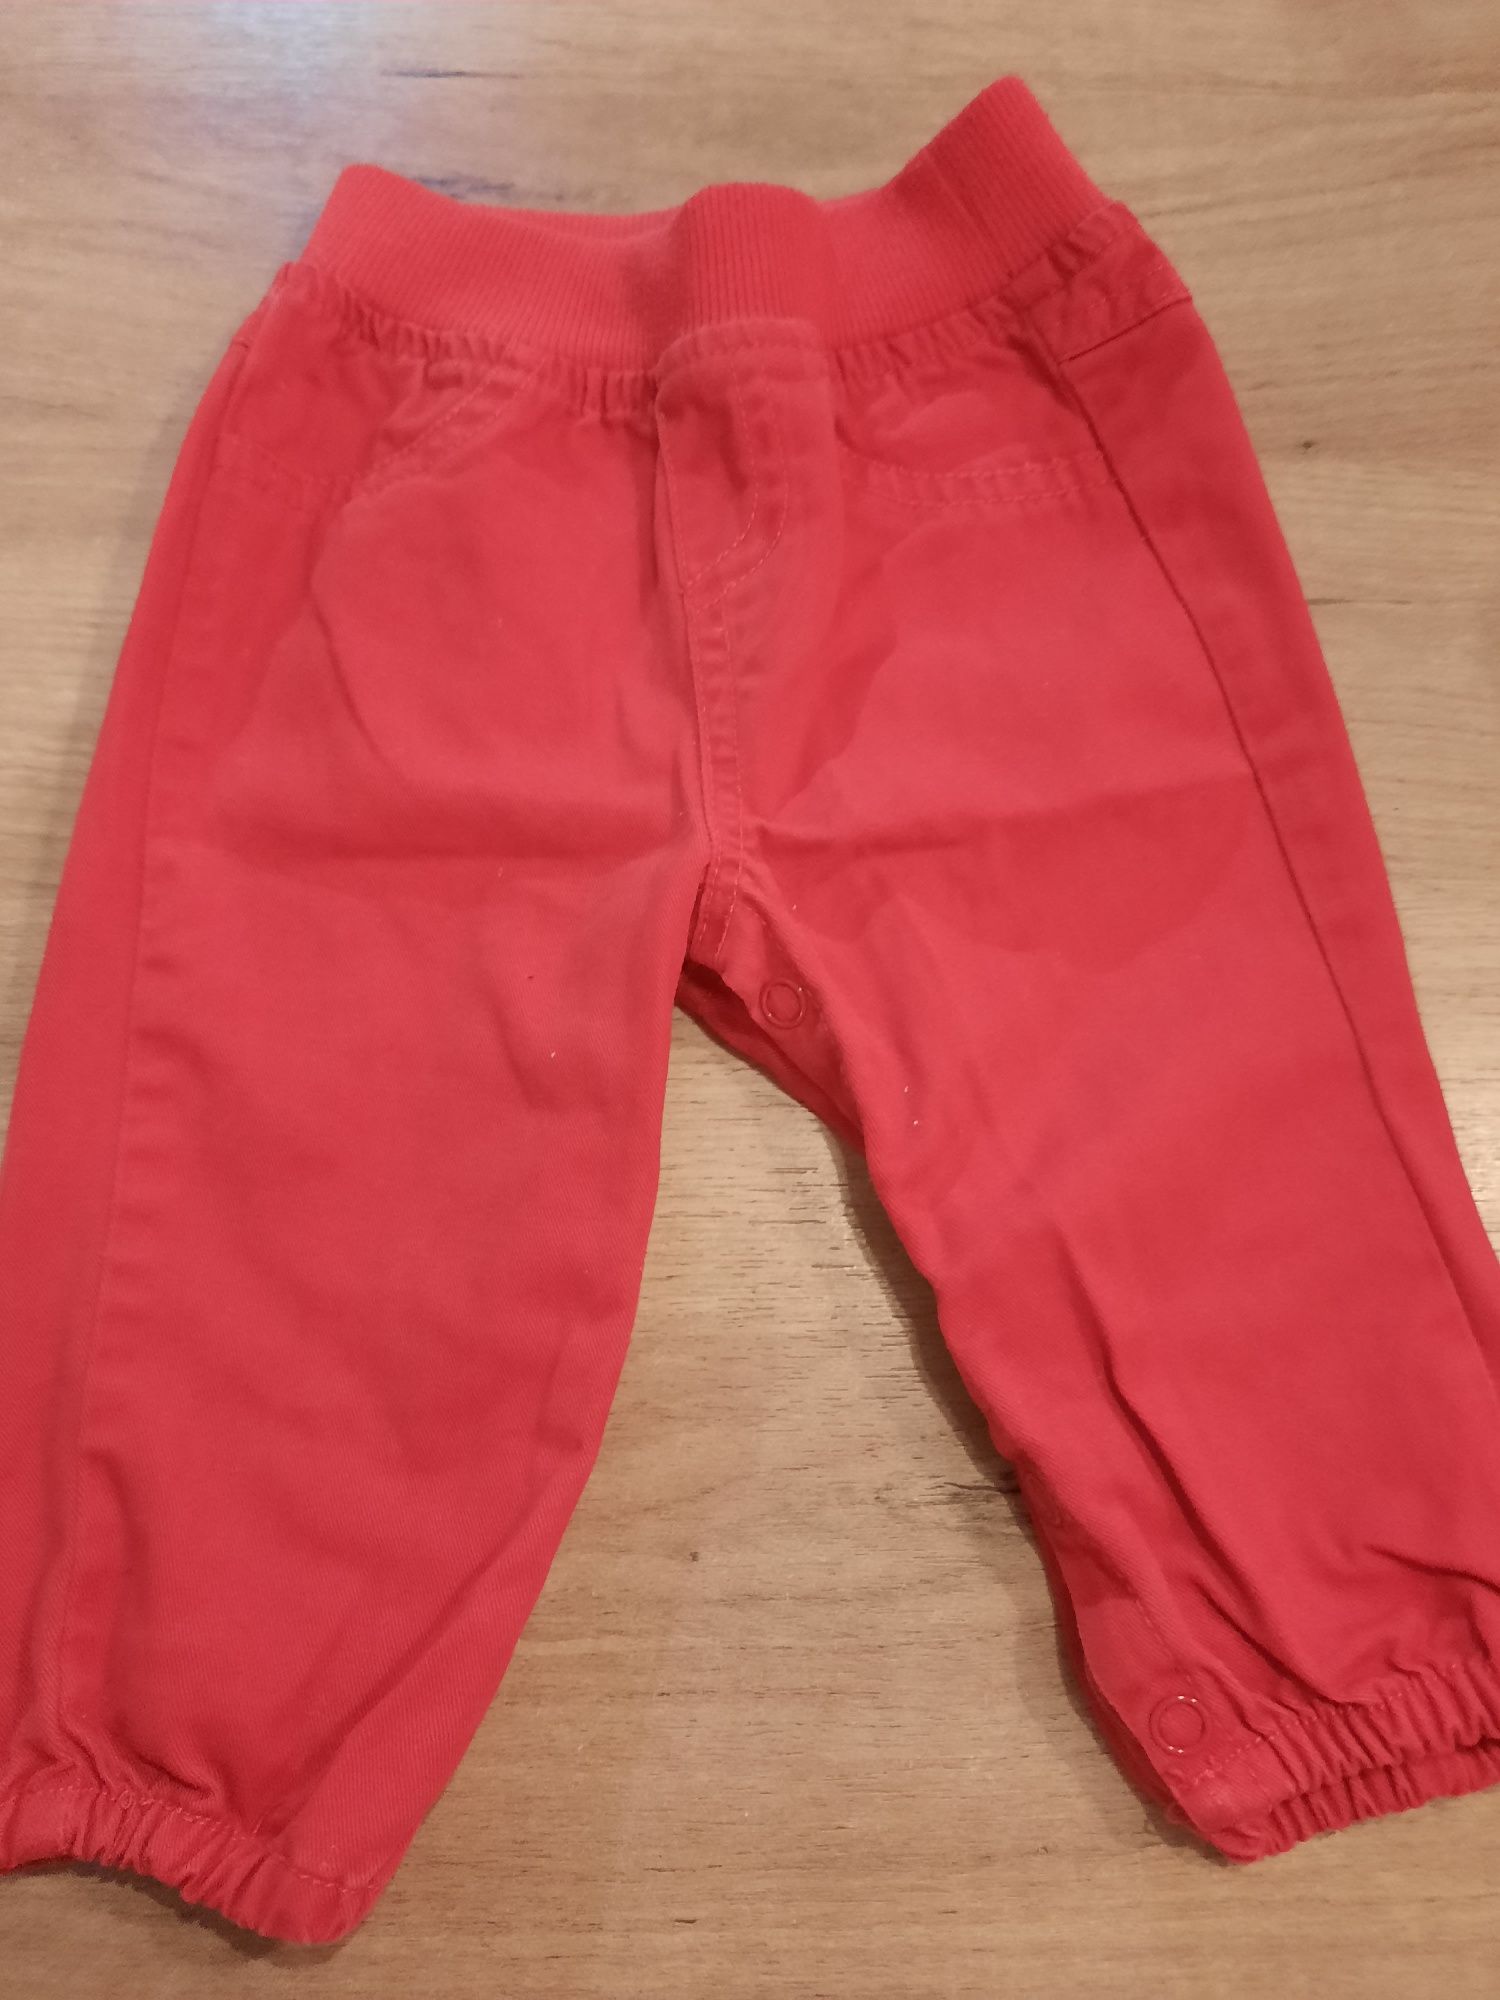 Spodnie czerwone zapinane